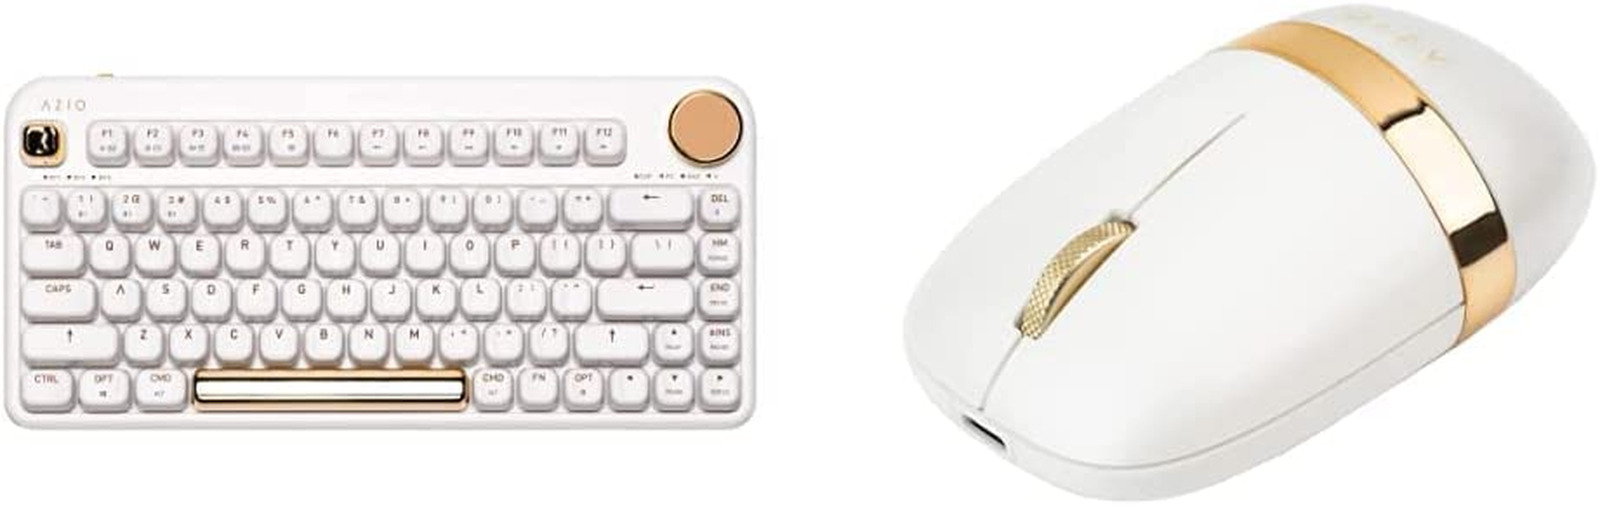 IZO Wireless BT5/USB PC & Mac Mechanical Keyboard, White Blossom & IZO Wireless 